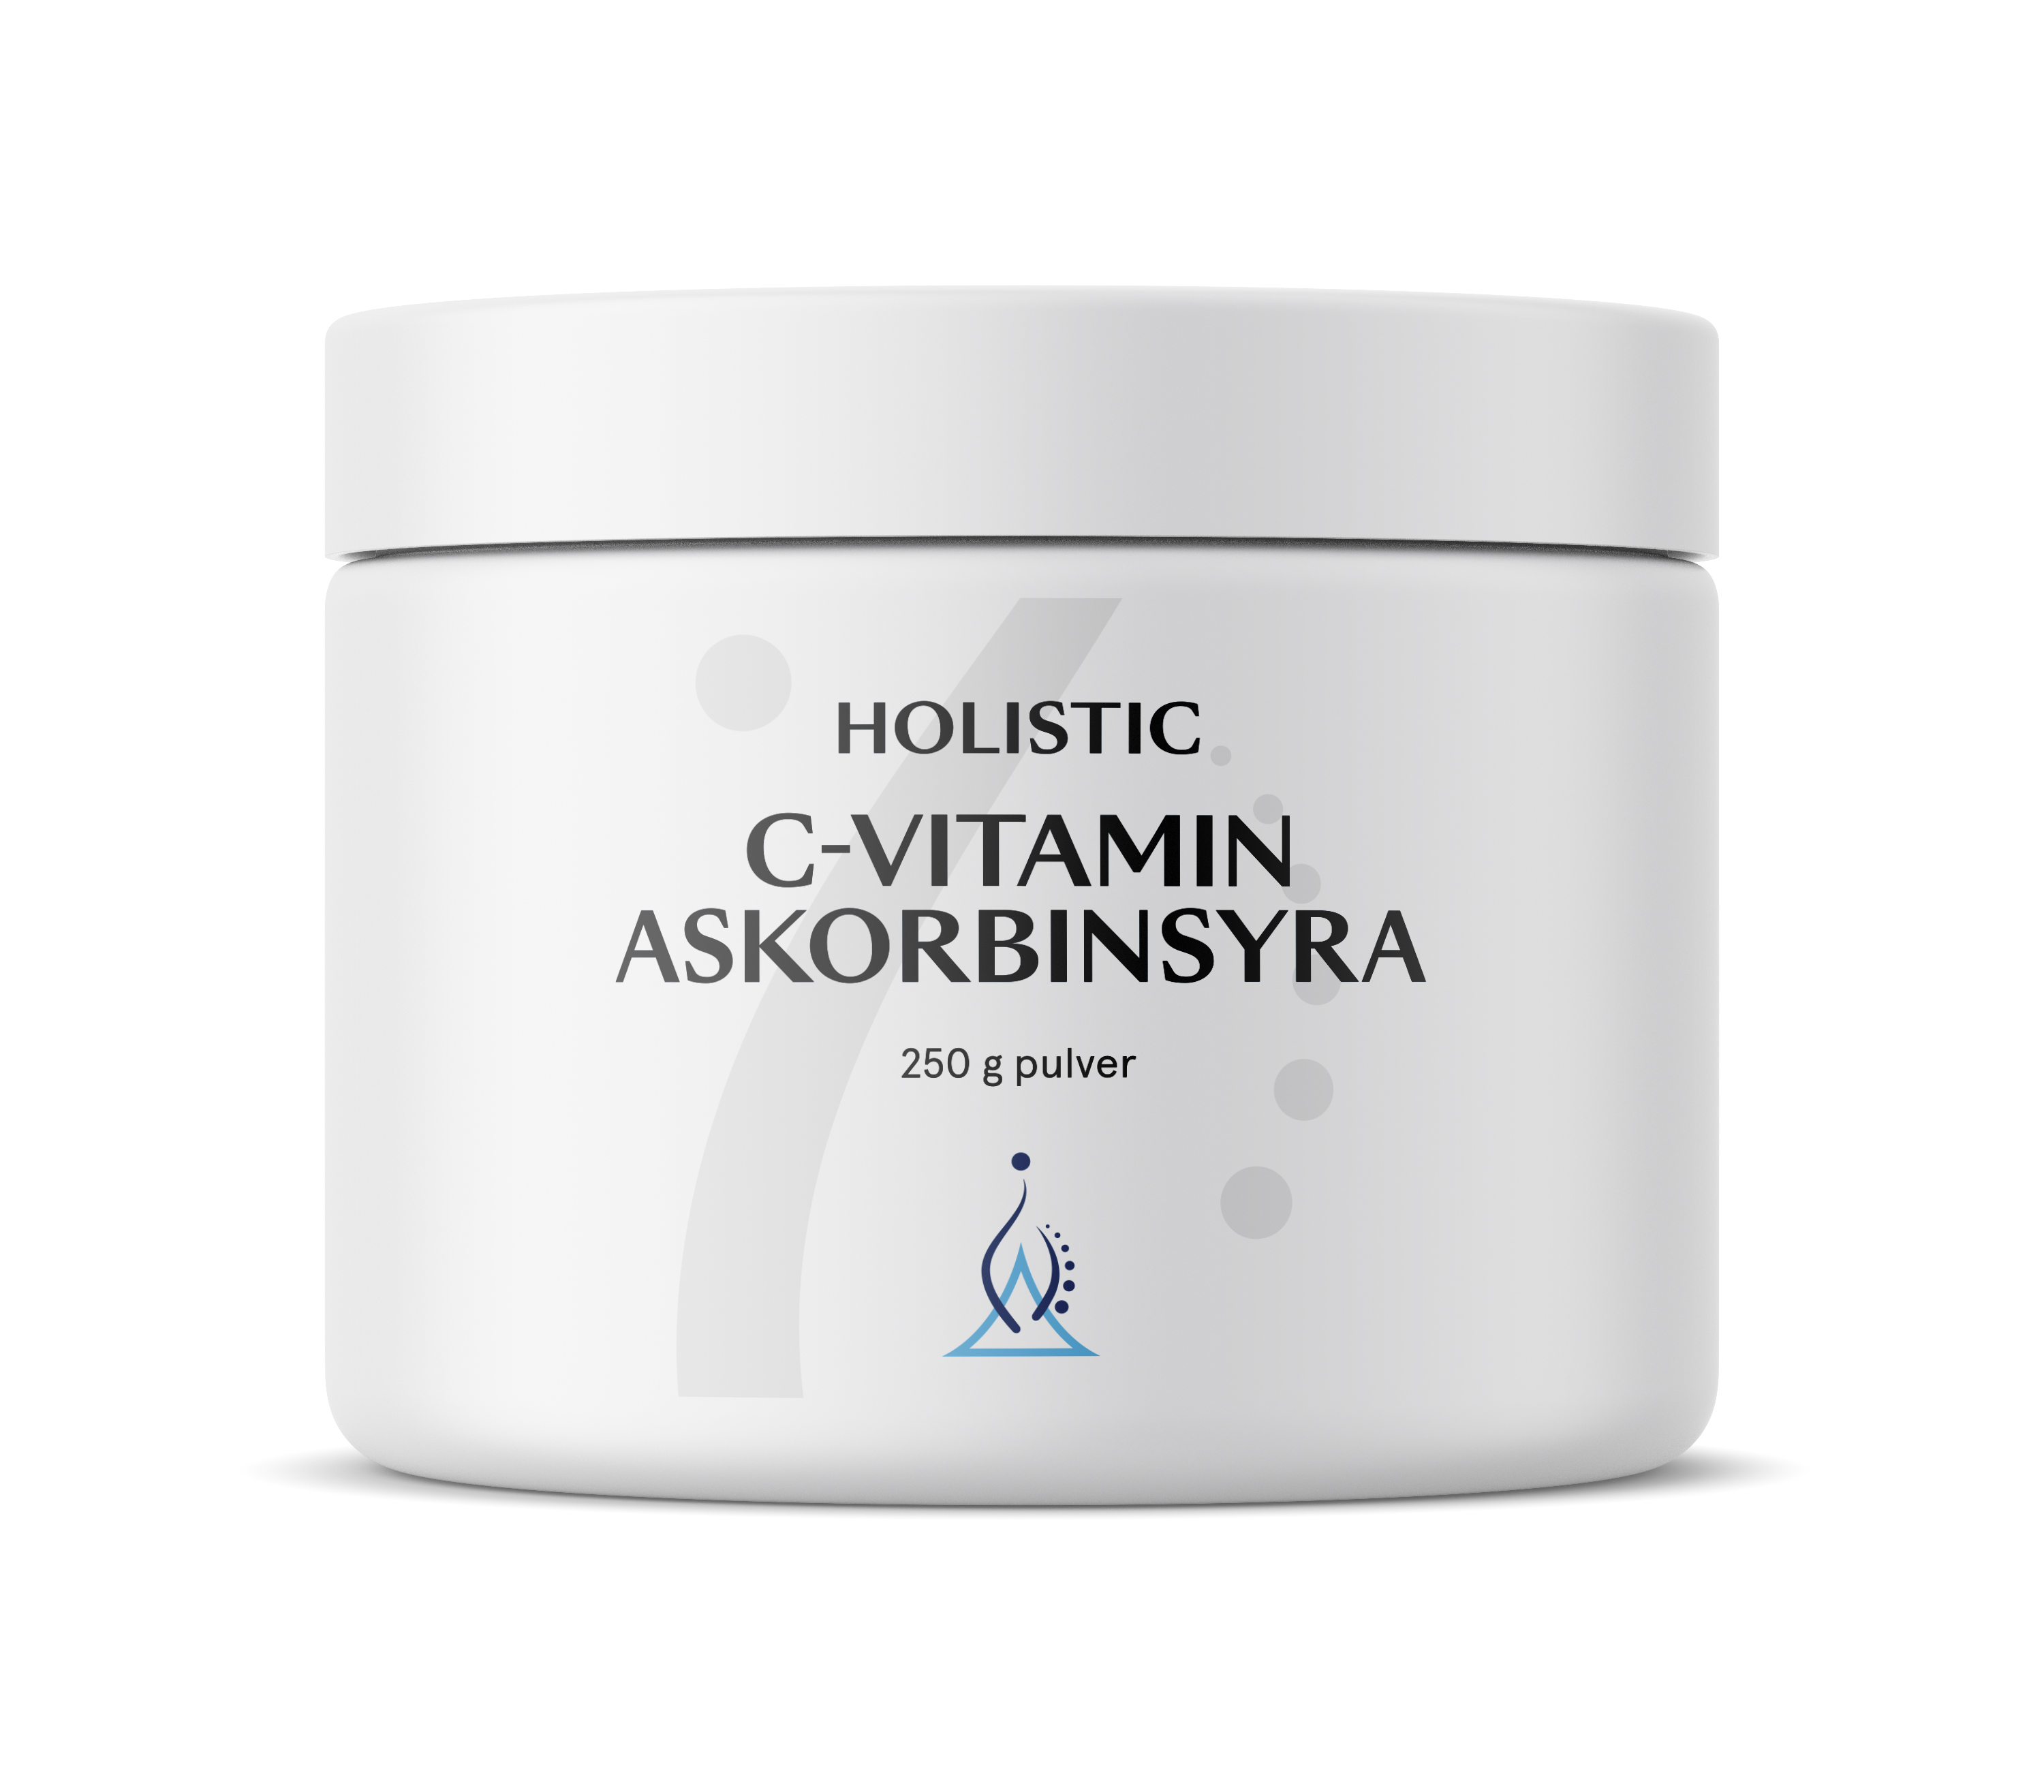 Holistic C-vitamin Askorbinsyra 250 g